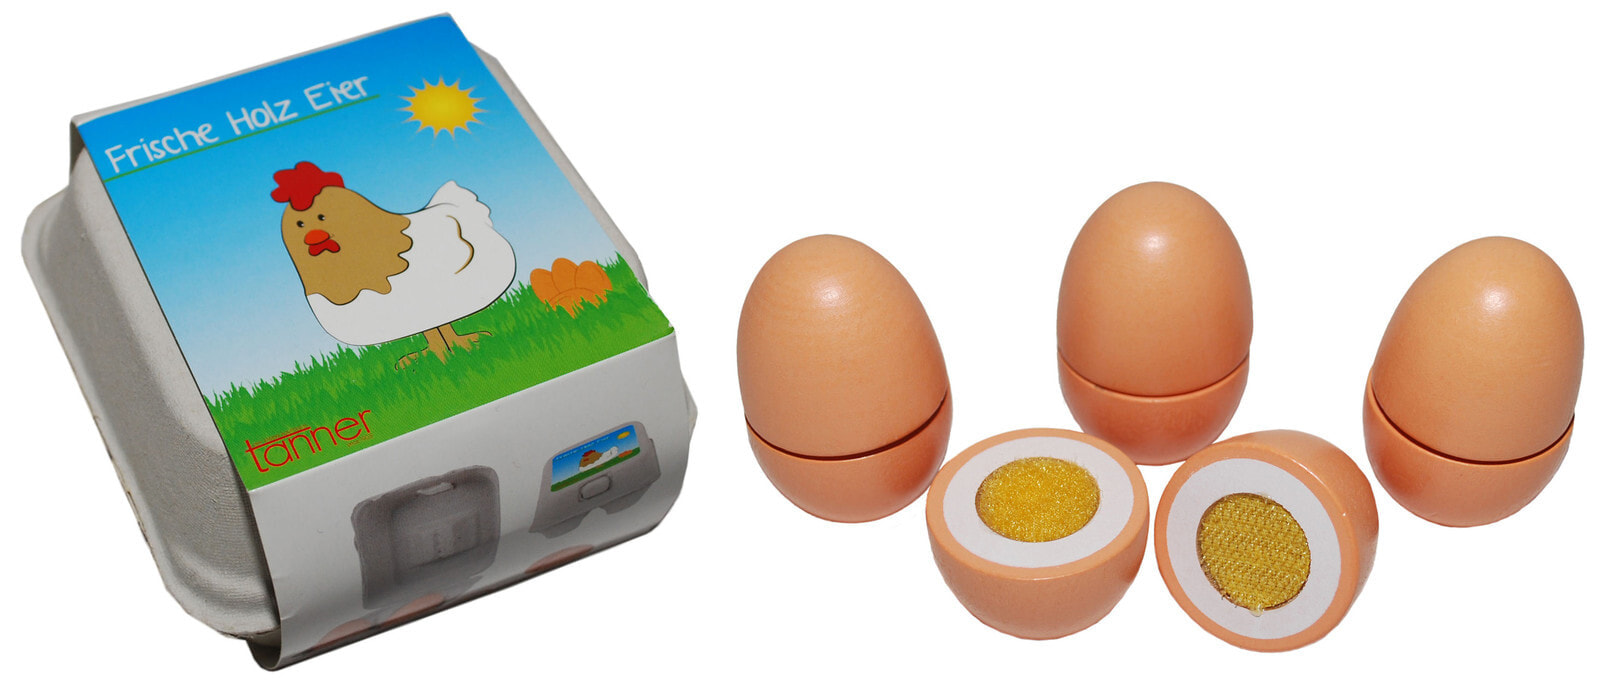 6 Яиц. Игровой набор Knopa яйца 6 шт 87098. Детский мир игрушка 6 яиц. Колодка для яиц. Яйцо 6 игра